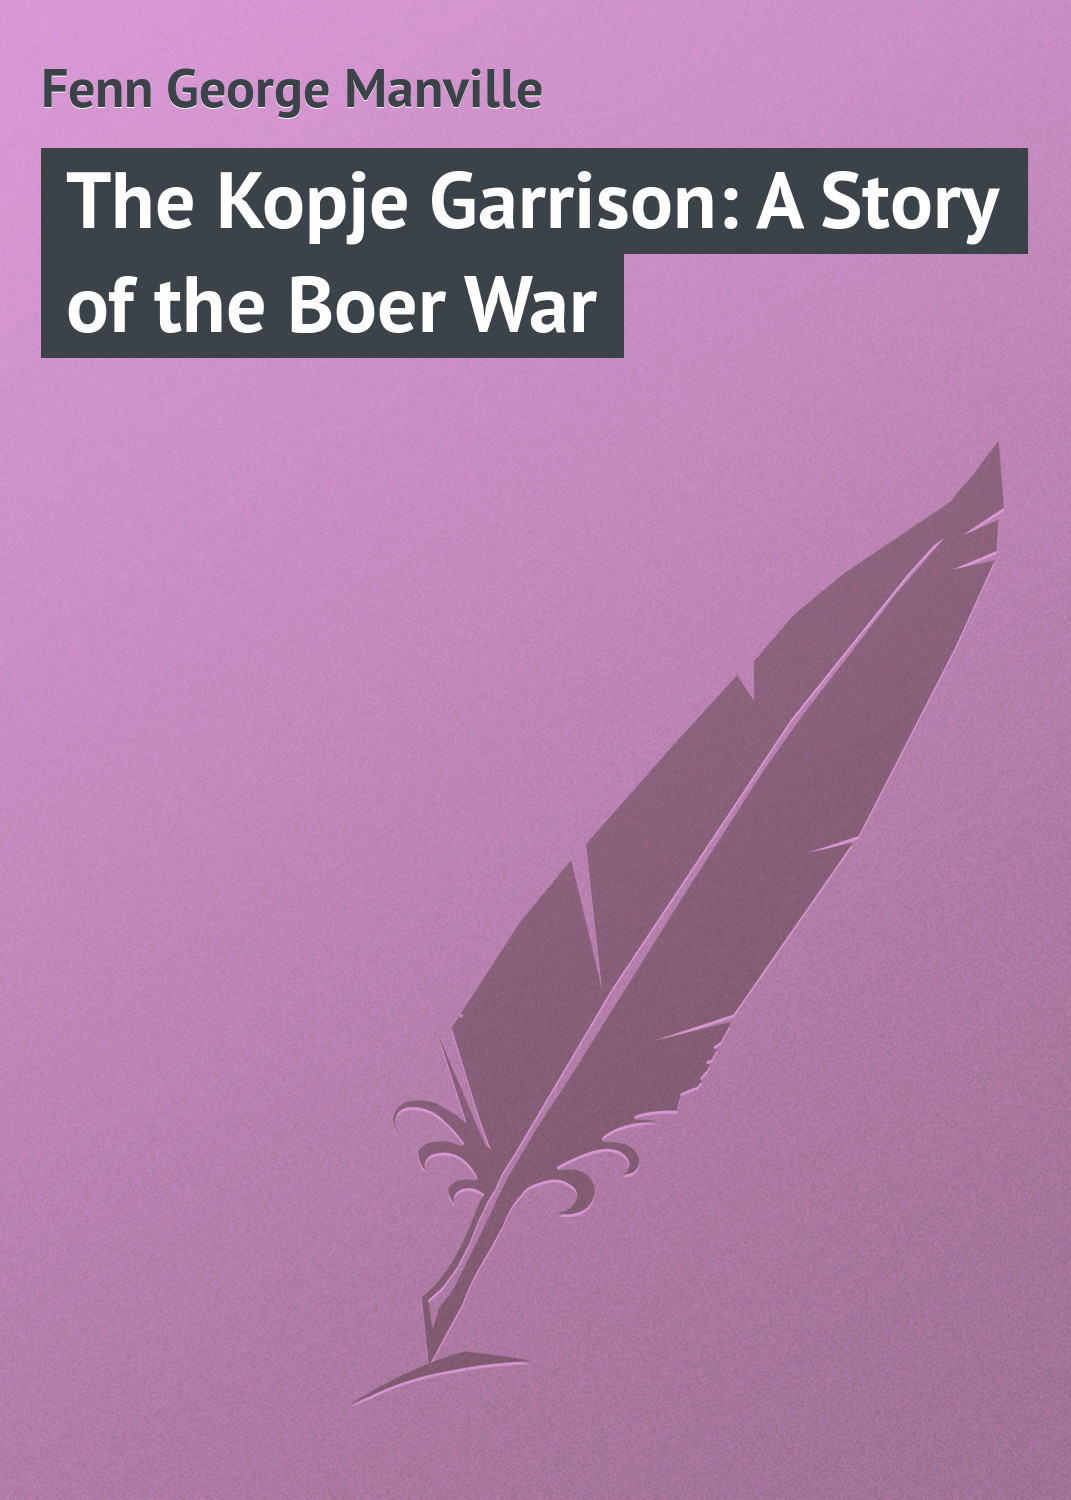 Книга The Kopje Garrison: A Story of the Boer War из серии , созданная George Fenn, может относится к жанру Зарубежная классика, Иностранные языки. Стоимость электронной книги The Kopje Garrison: A Story of the Boer War с идентификатором 23151611 составляет 5.99 руб.